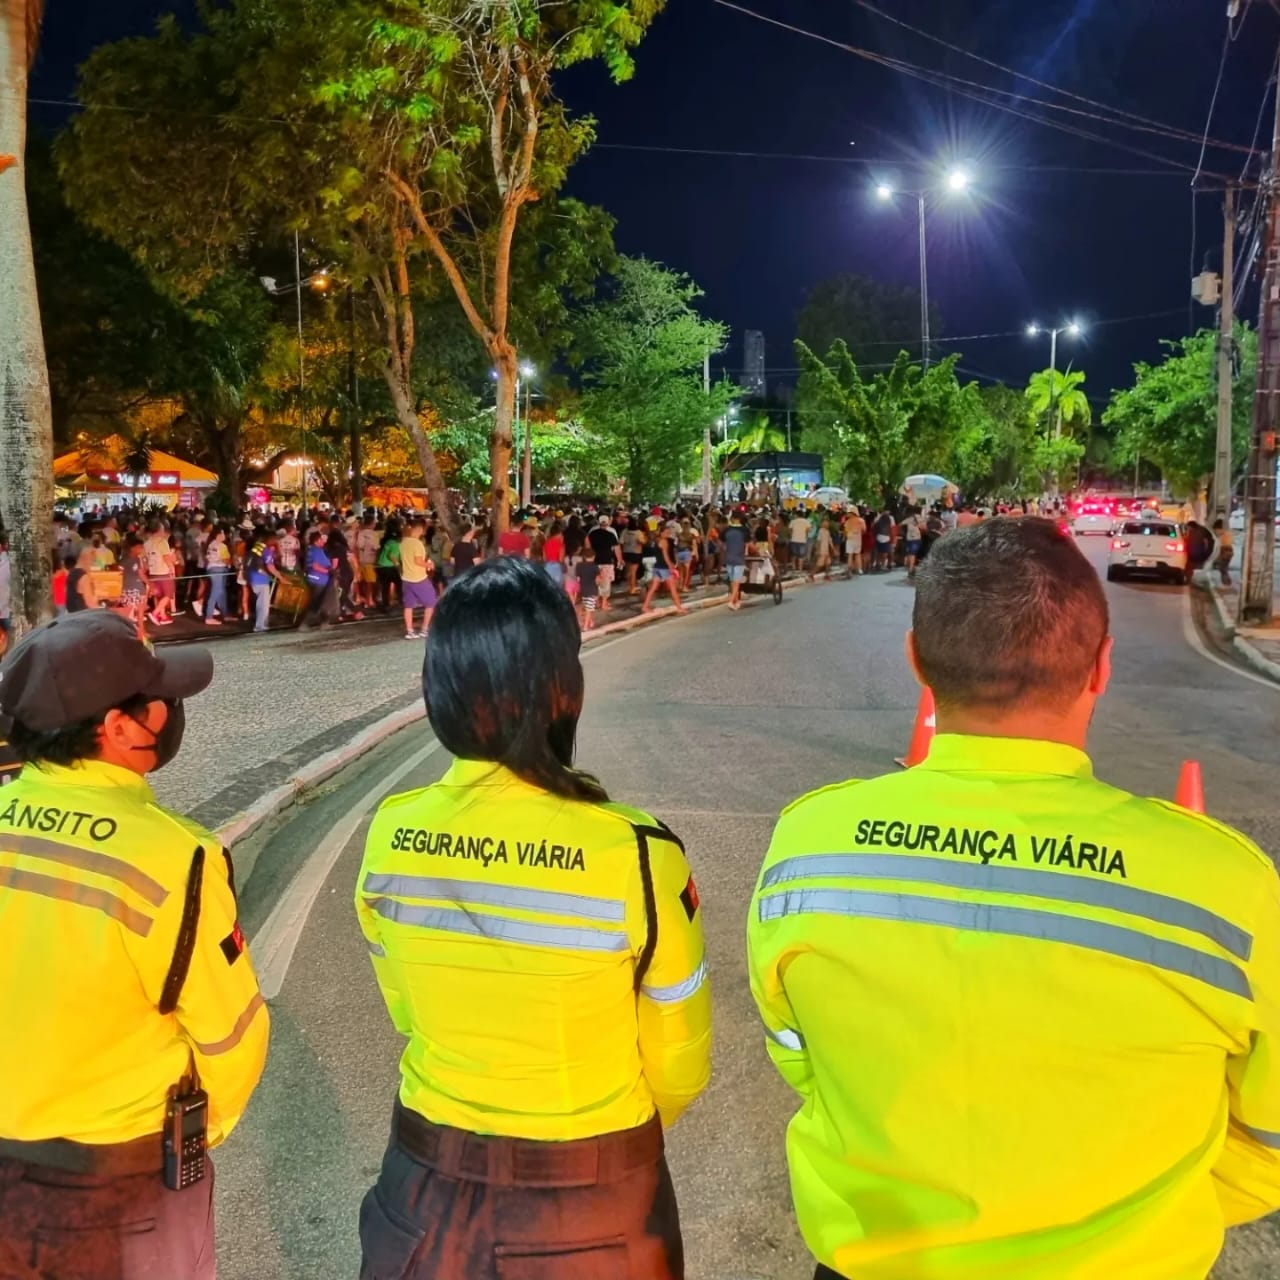 Prefeitura de Campina Grande divulga plano de segurança viária para a 5ª edição da Corrida do Bem, que acontece no próximo sábado